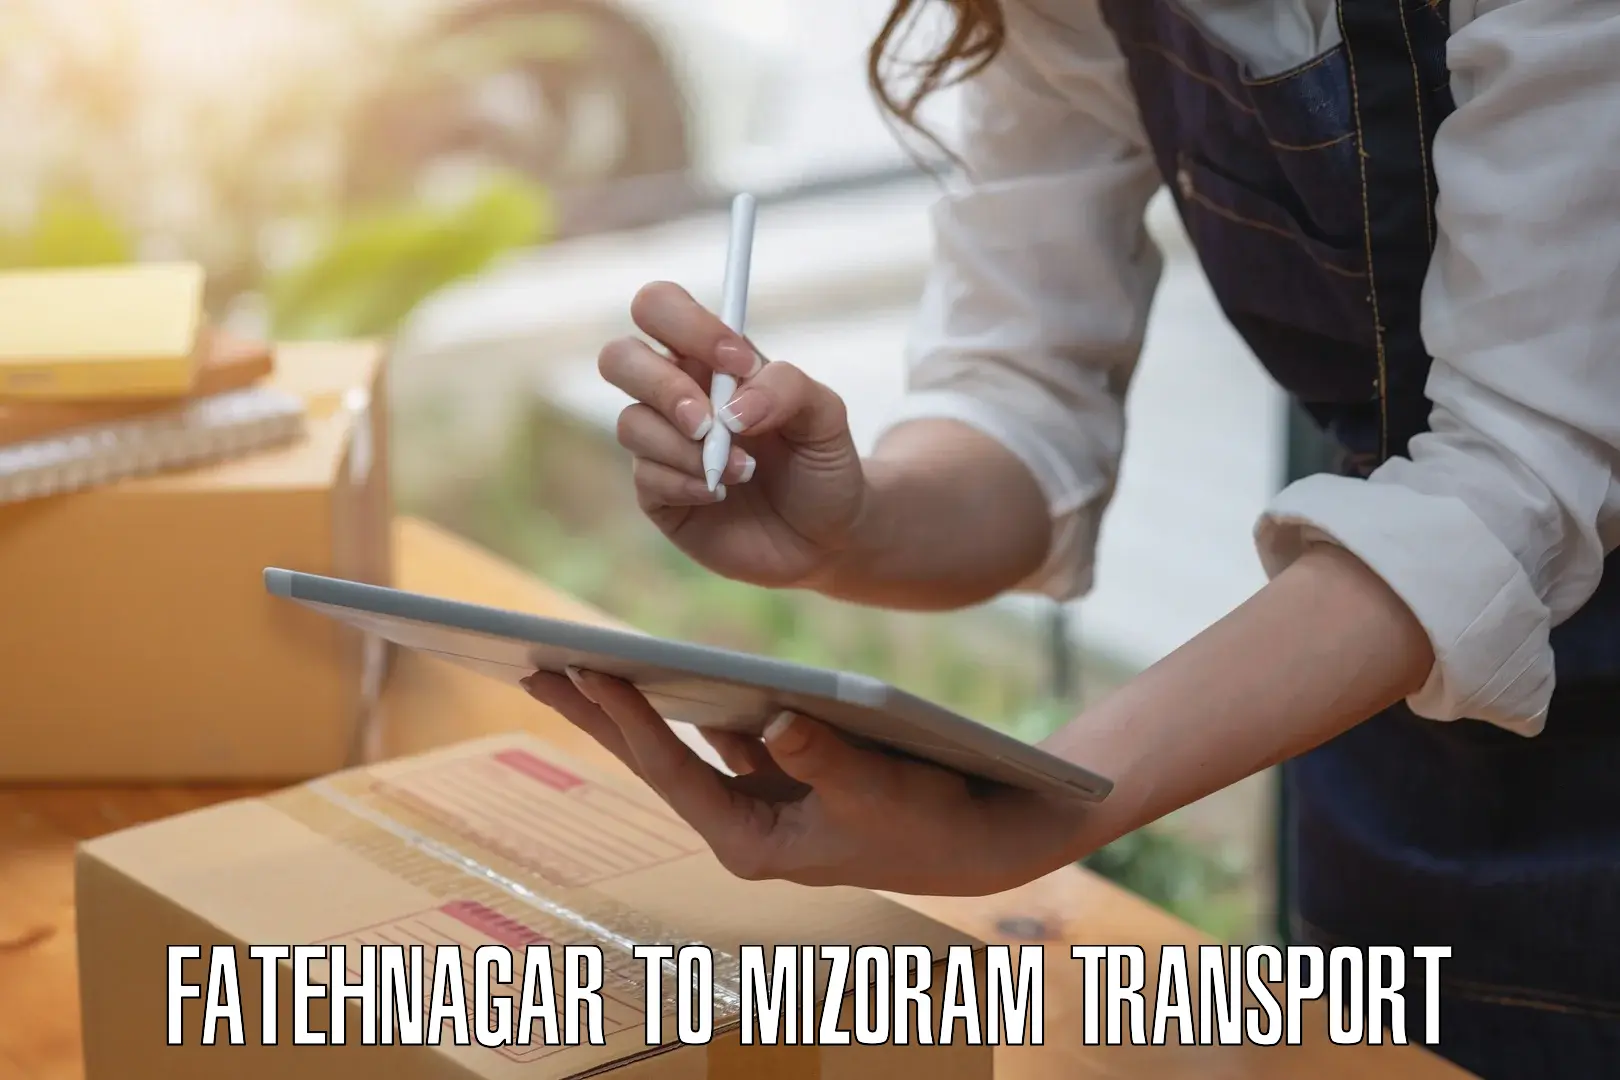 Transport in sharing Fatehnagar to Mizoram